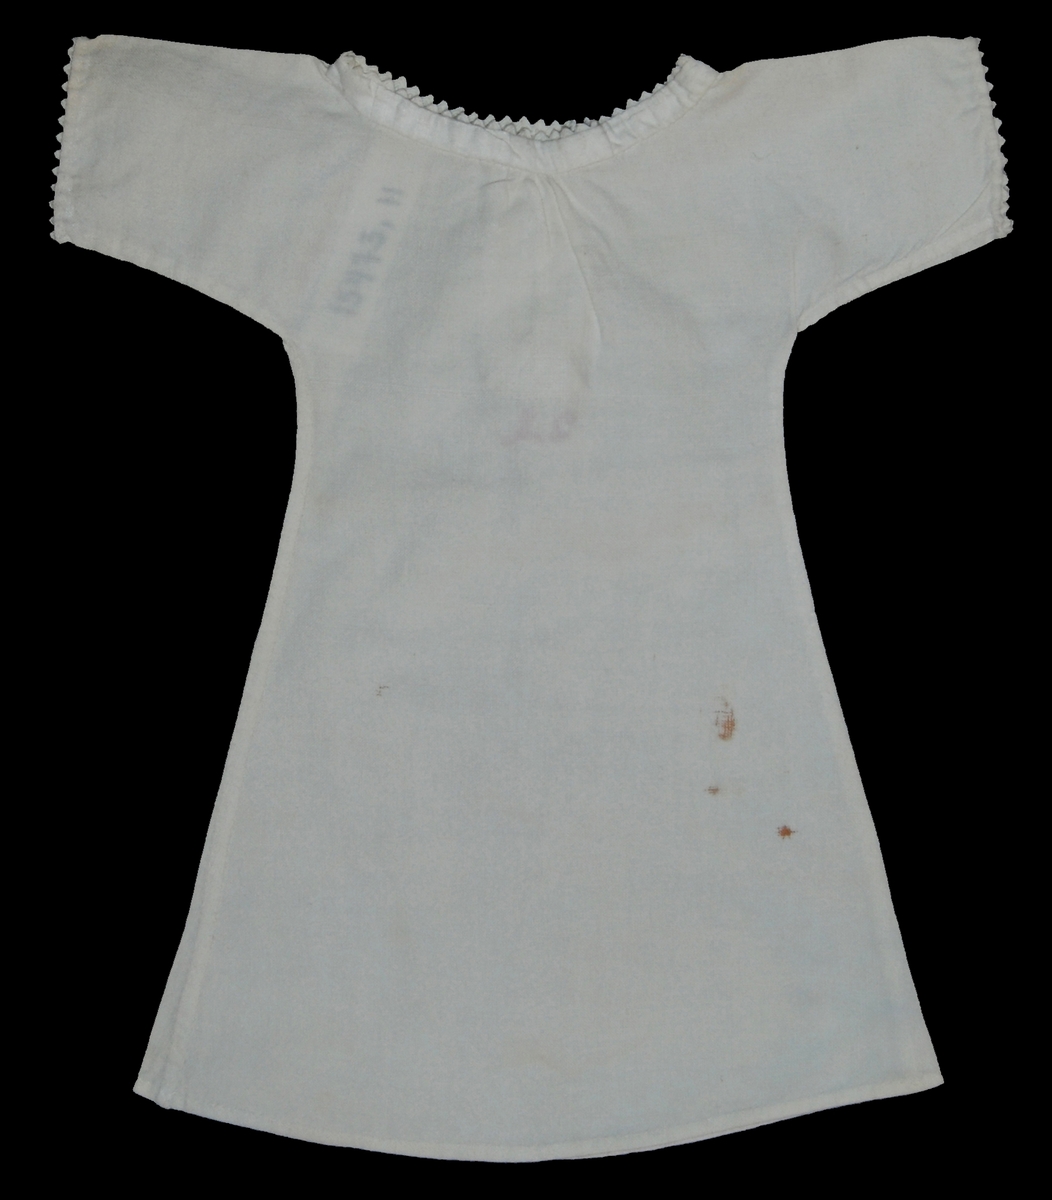 Vit nattskjorta, märkt IB, med uddspets kring hals och halsöppning, en knapp i halsen sammanhåller
skjortan, spets kring ärmarna,